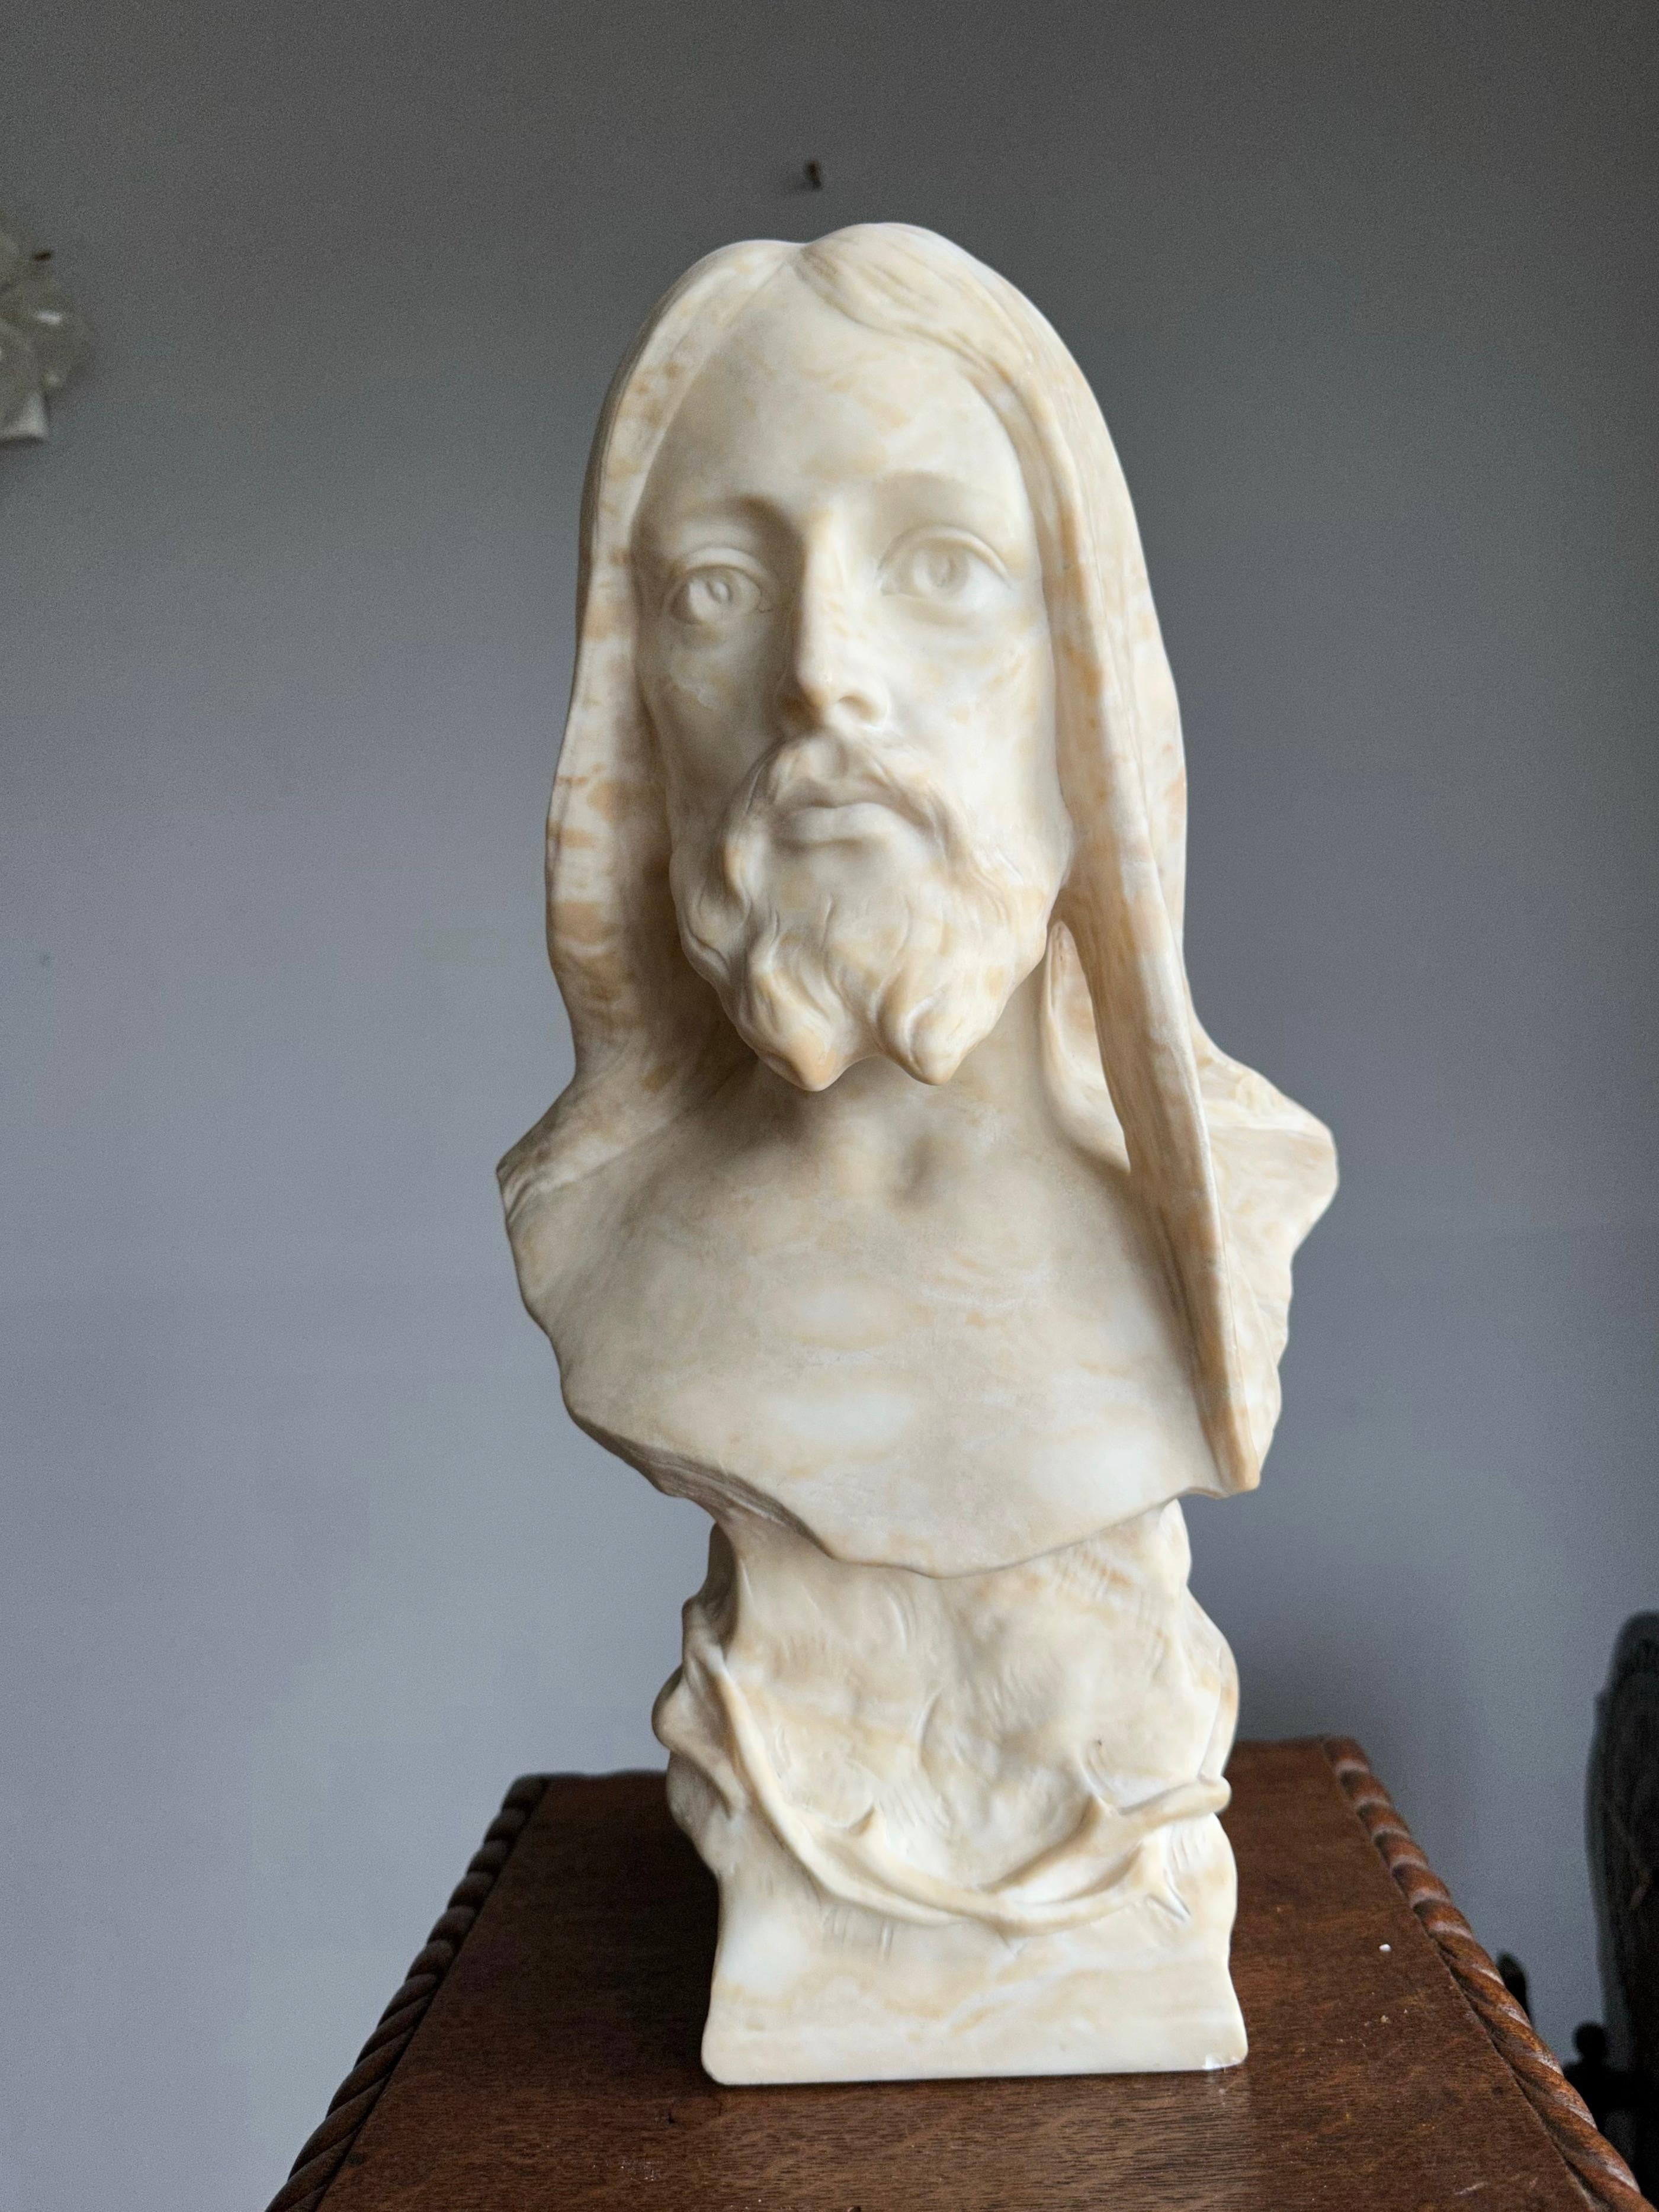 Einzigartige und antike Alabaster-Skulptur unseres Herrn Jesus.

Dieses prächtige und großformatige Werk religiöser Kunst aus einer Kirche oder einem Kloster eignet sich auch ideal für die Ausstellung zu Hause. Besonders das positive und